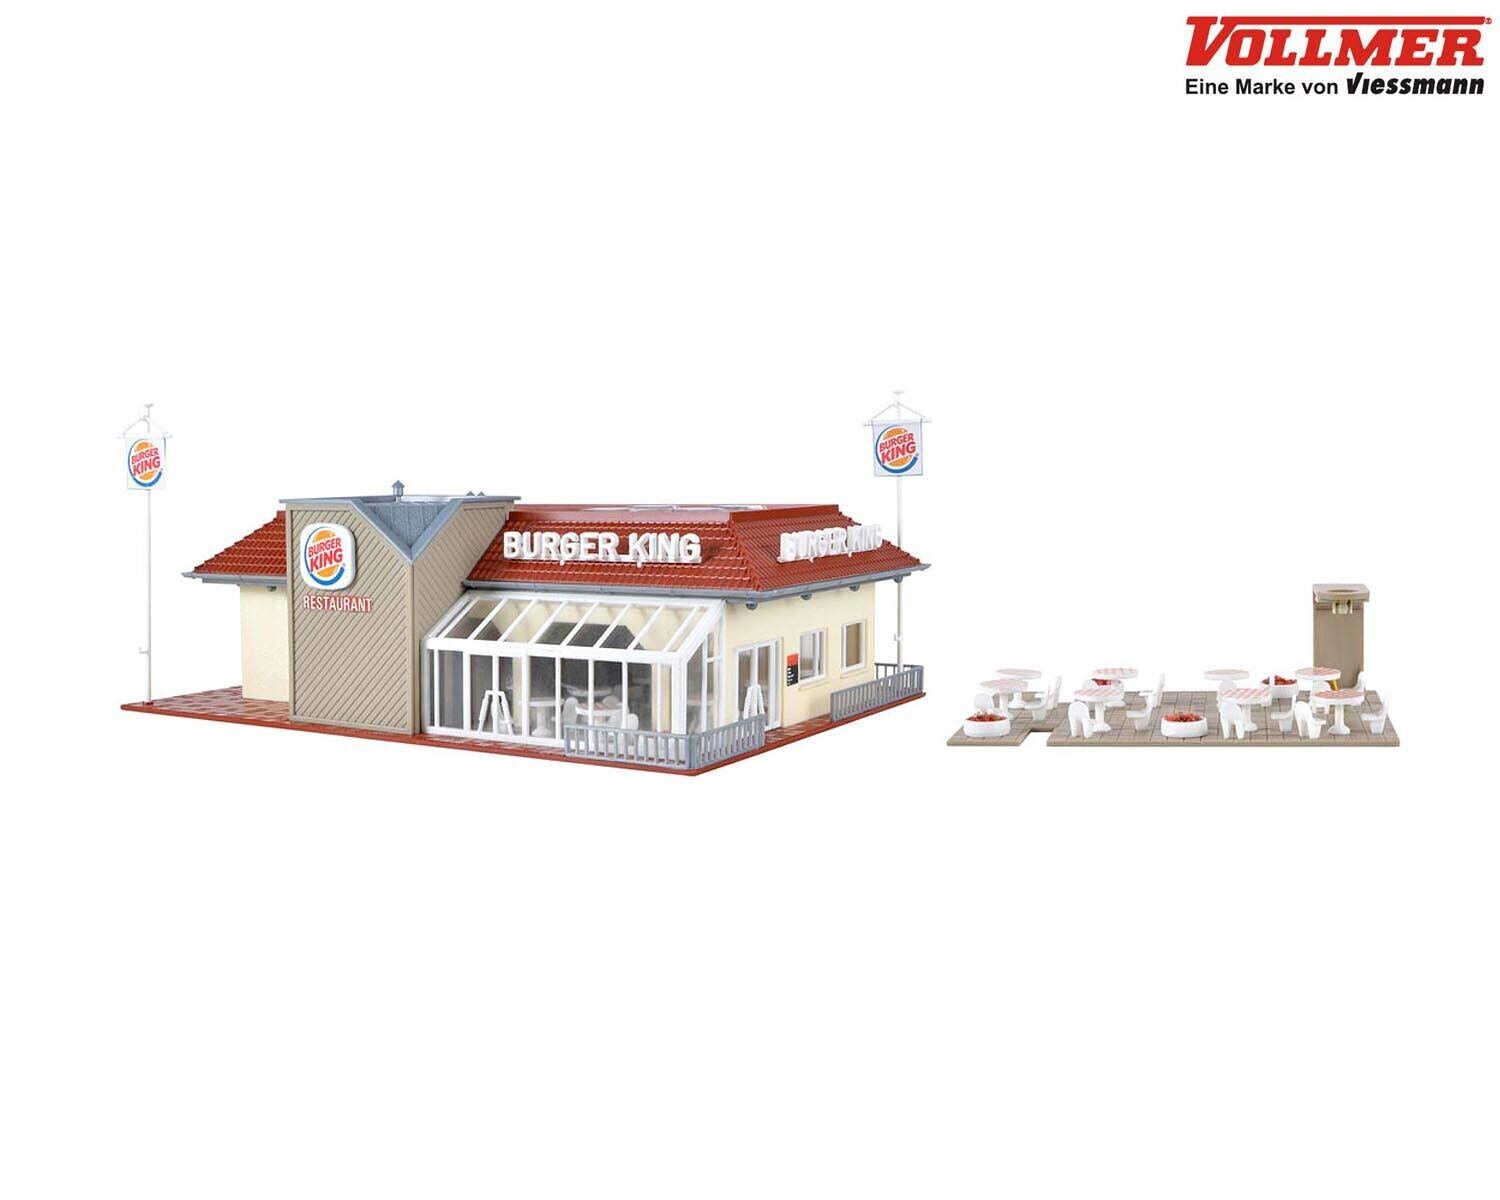 Vollmer 43632 H0 Burger King Fast Restaurant